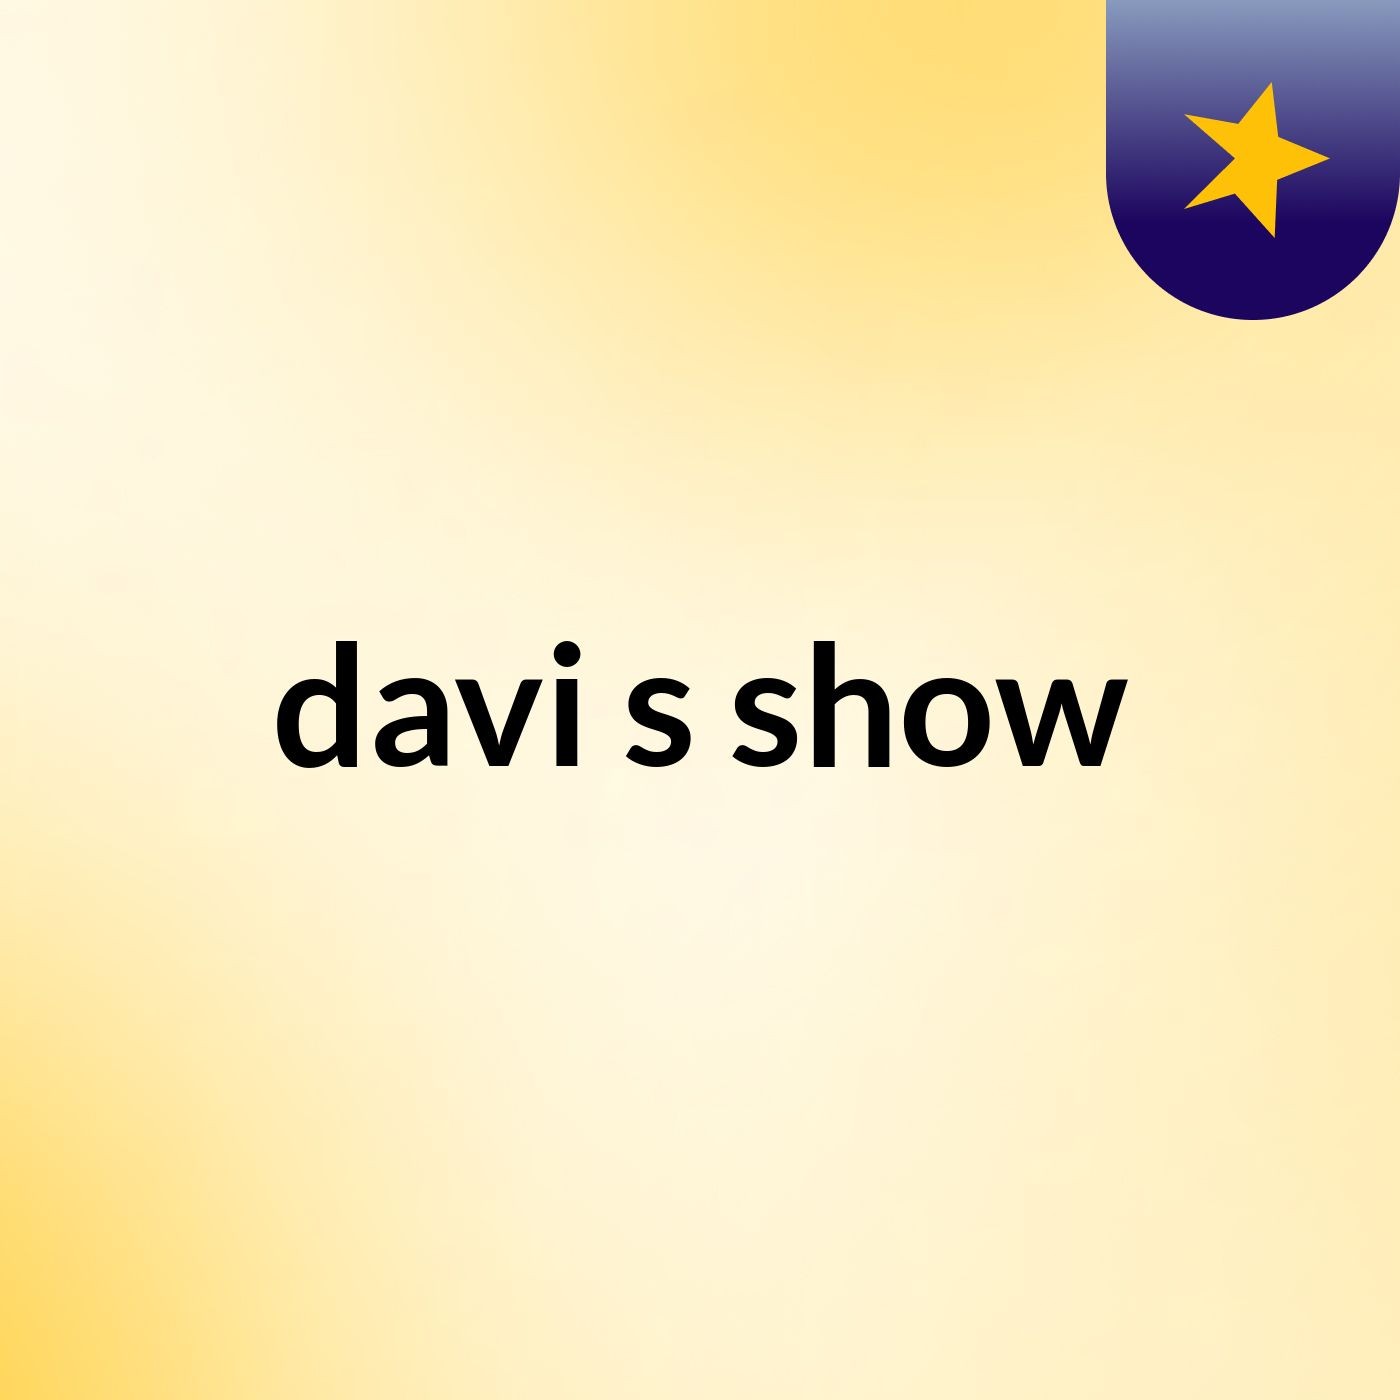 davi's show